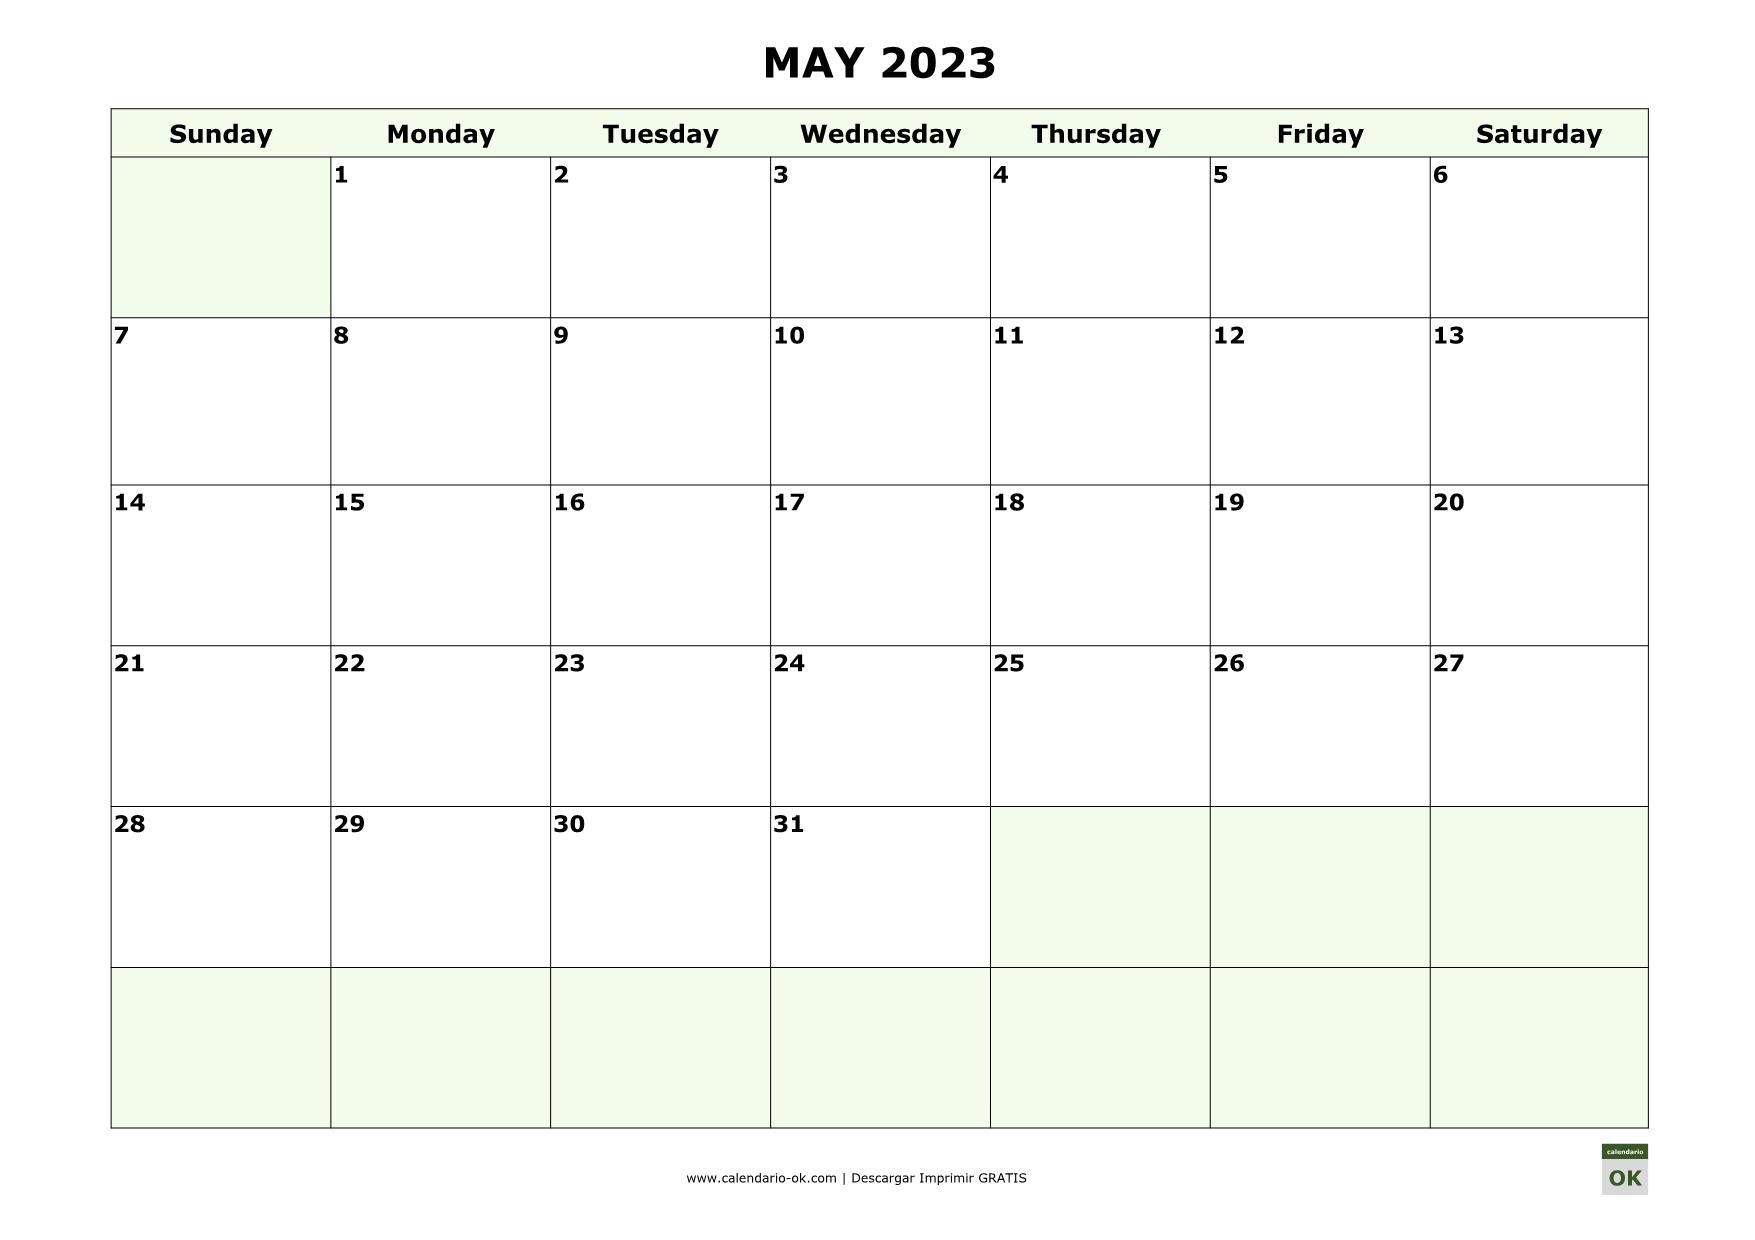 MAYO 2023 calendario en INGLES empieza por DOMINGO